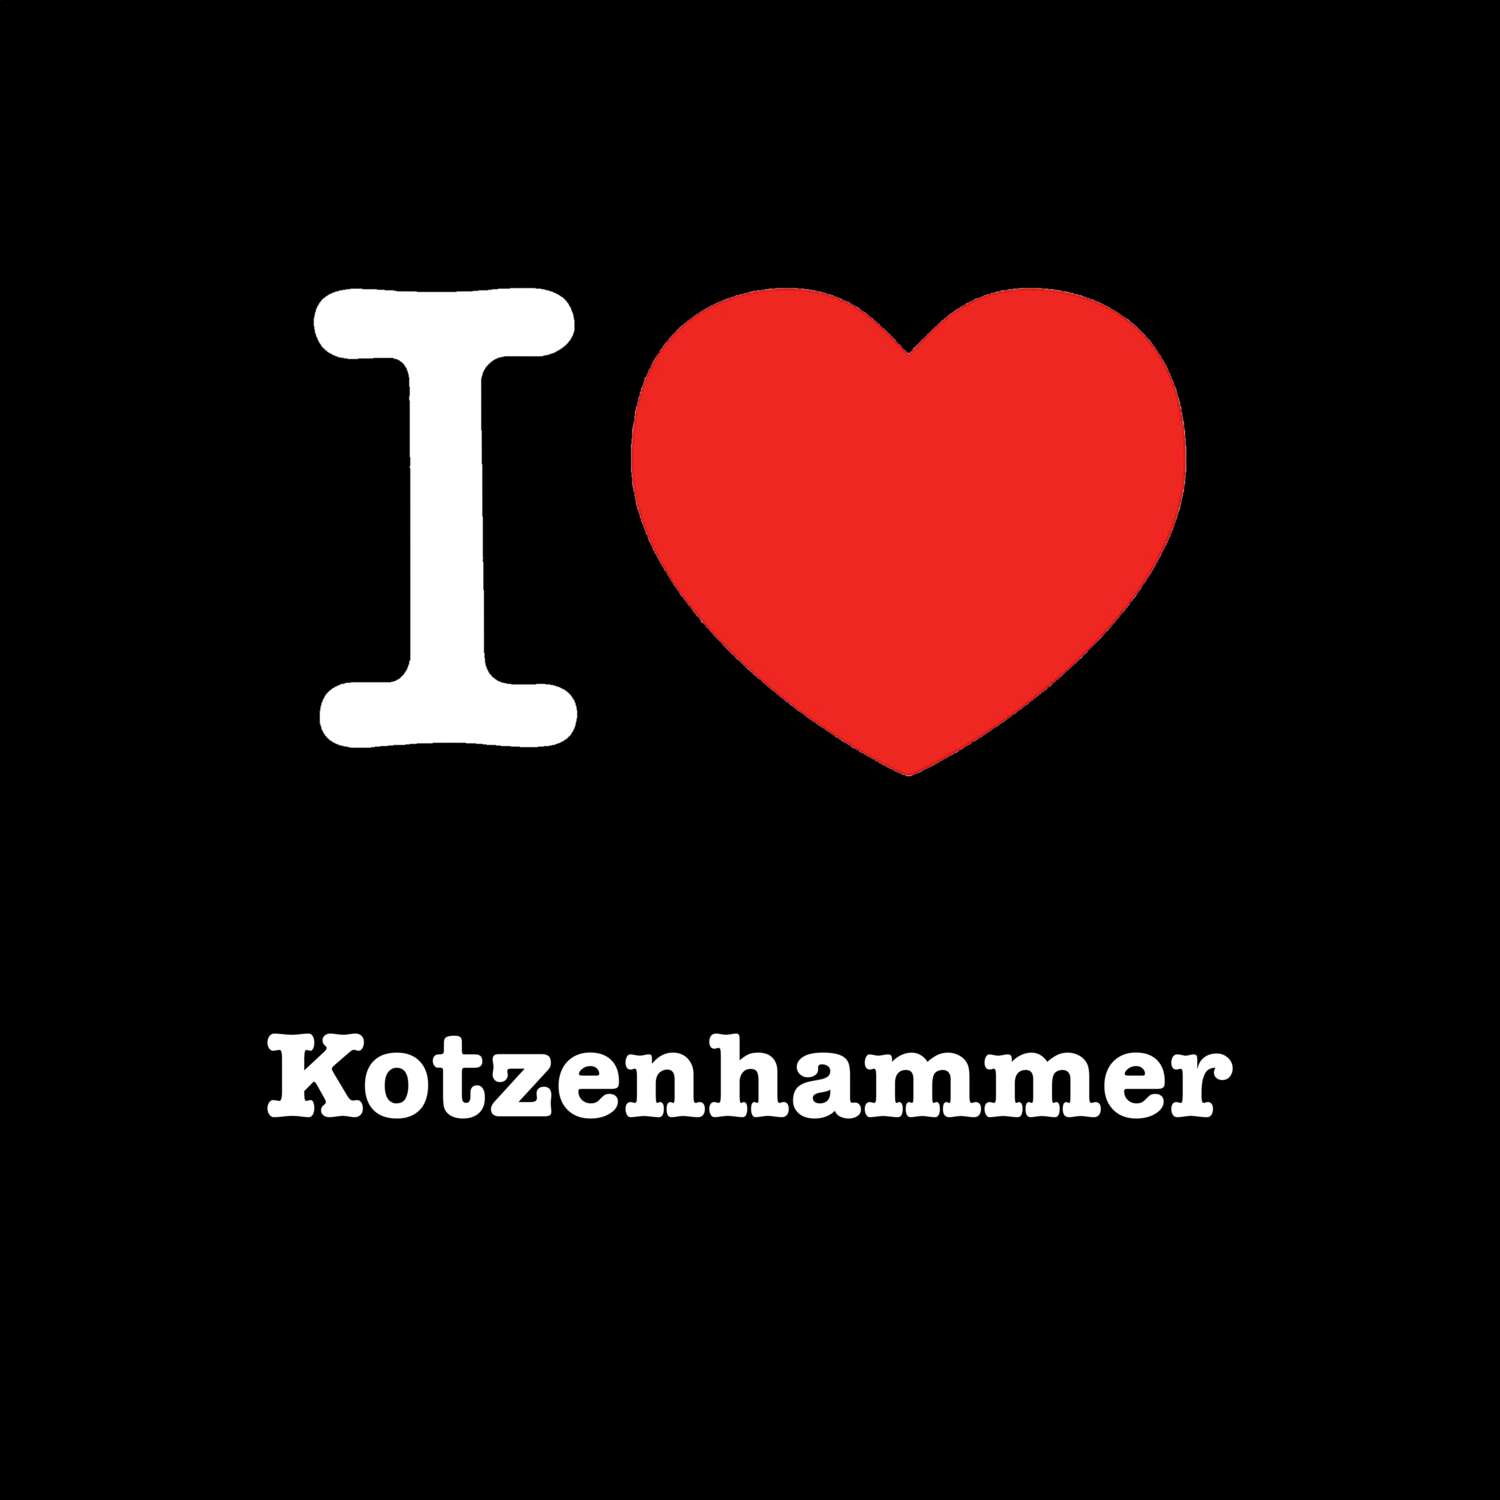 Kotzenhammer T-Shirt »I love«